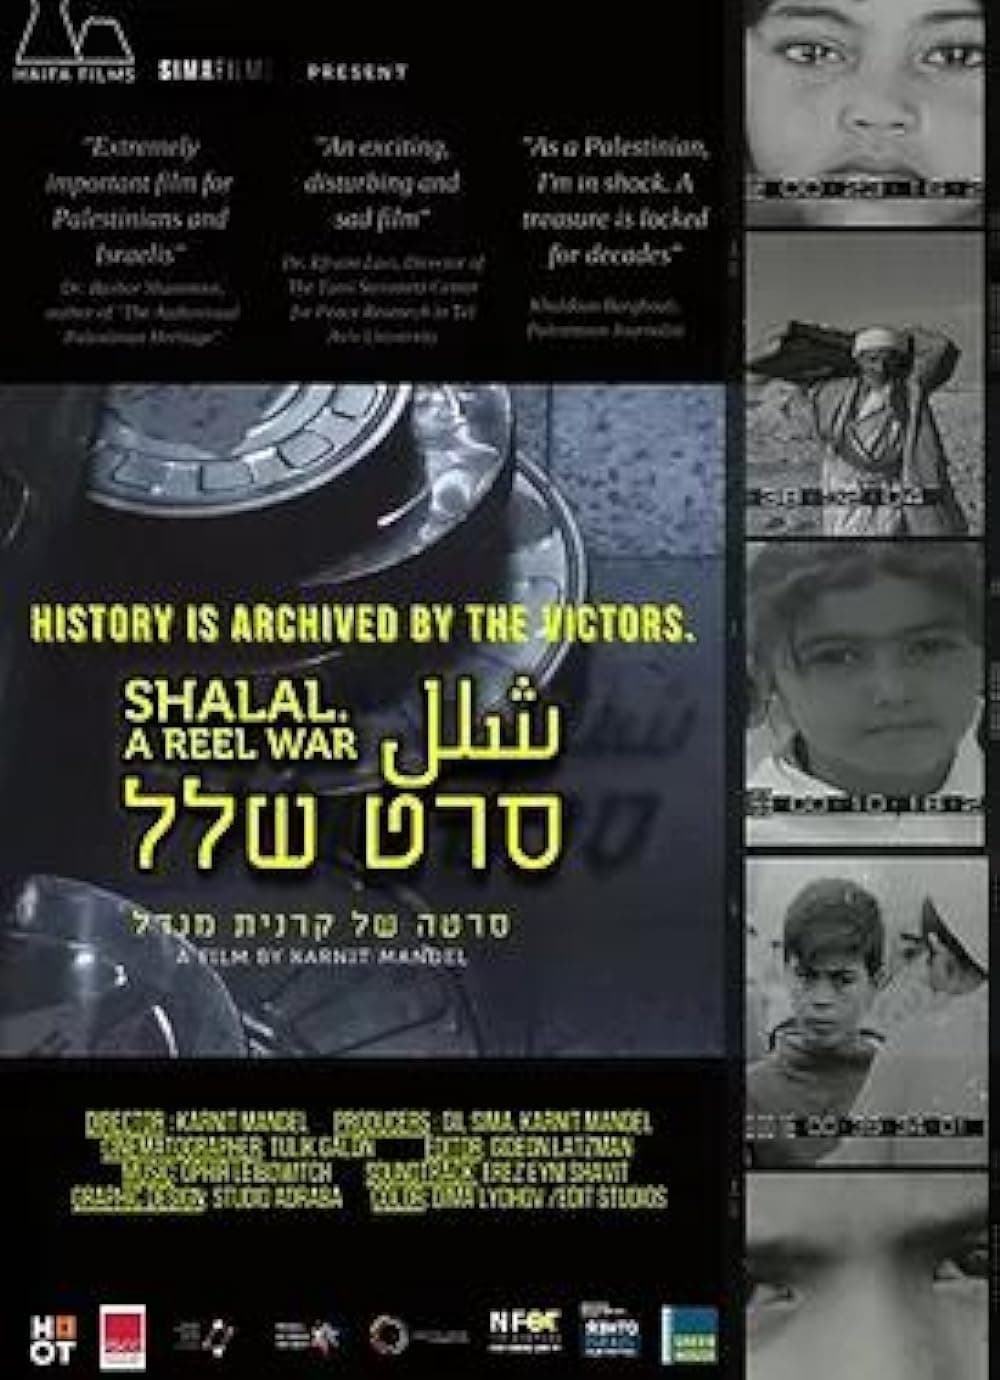 A Reel War: Shalal